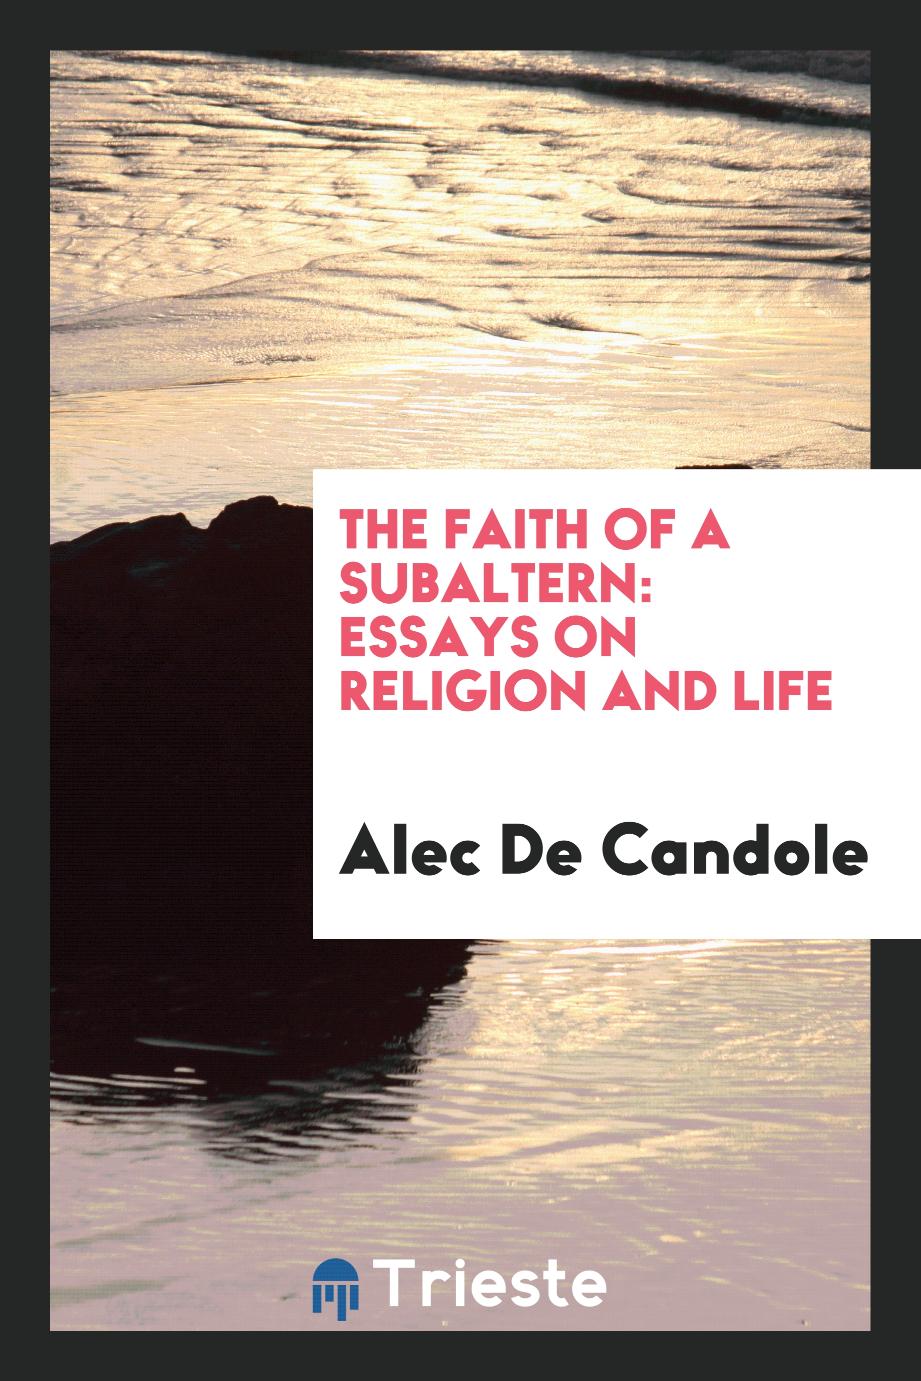 The faith of a subaltern: essays on religion and life